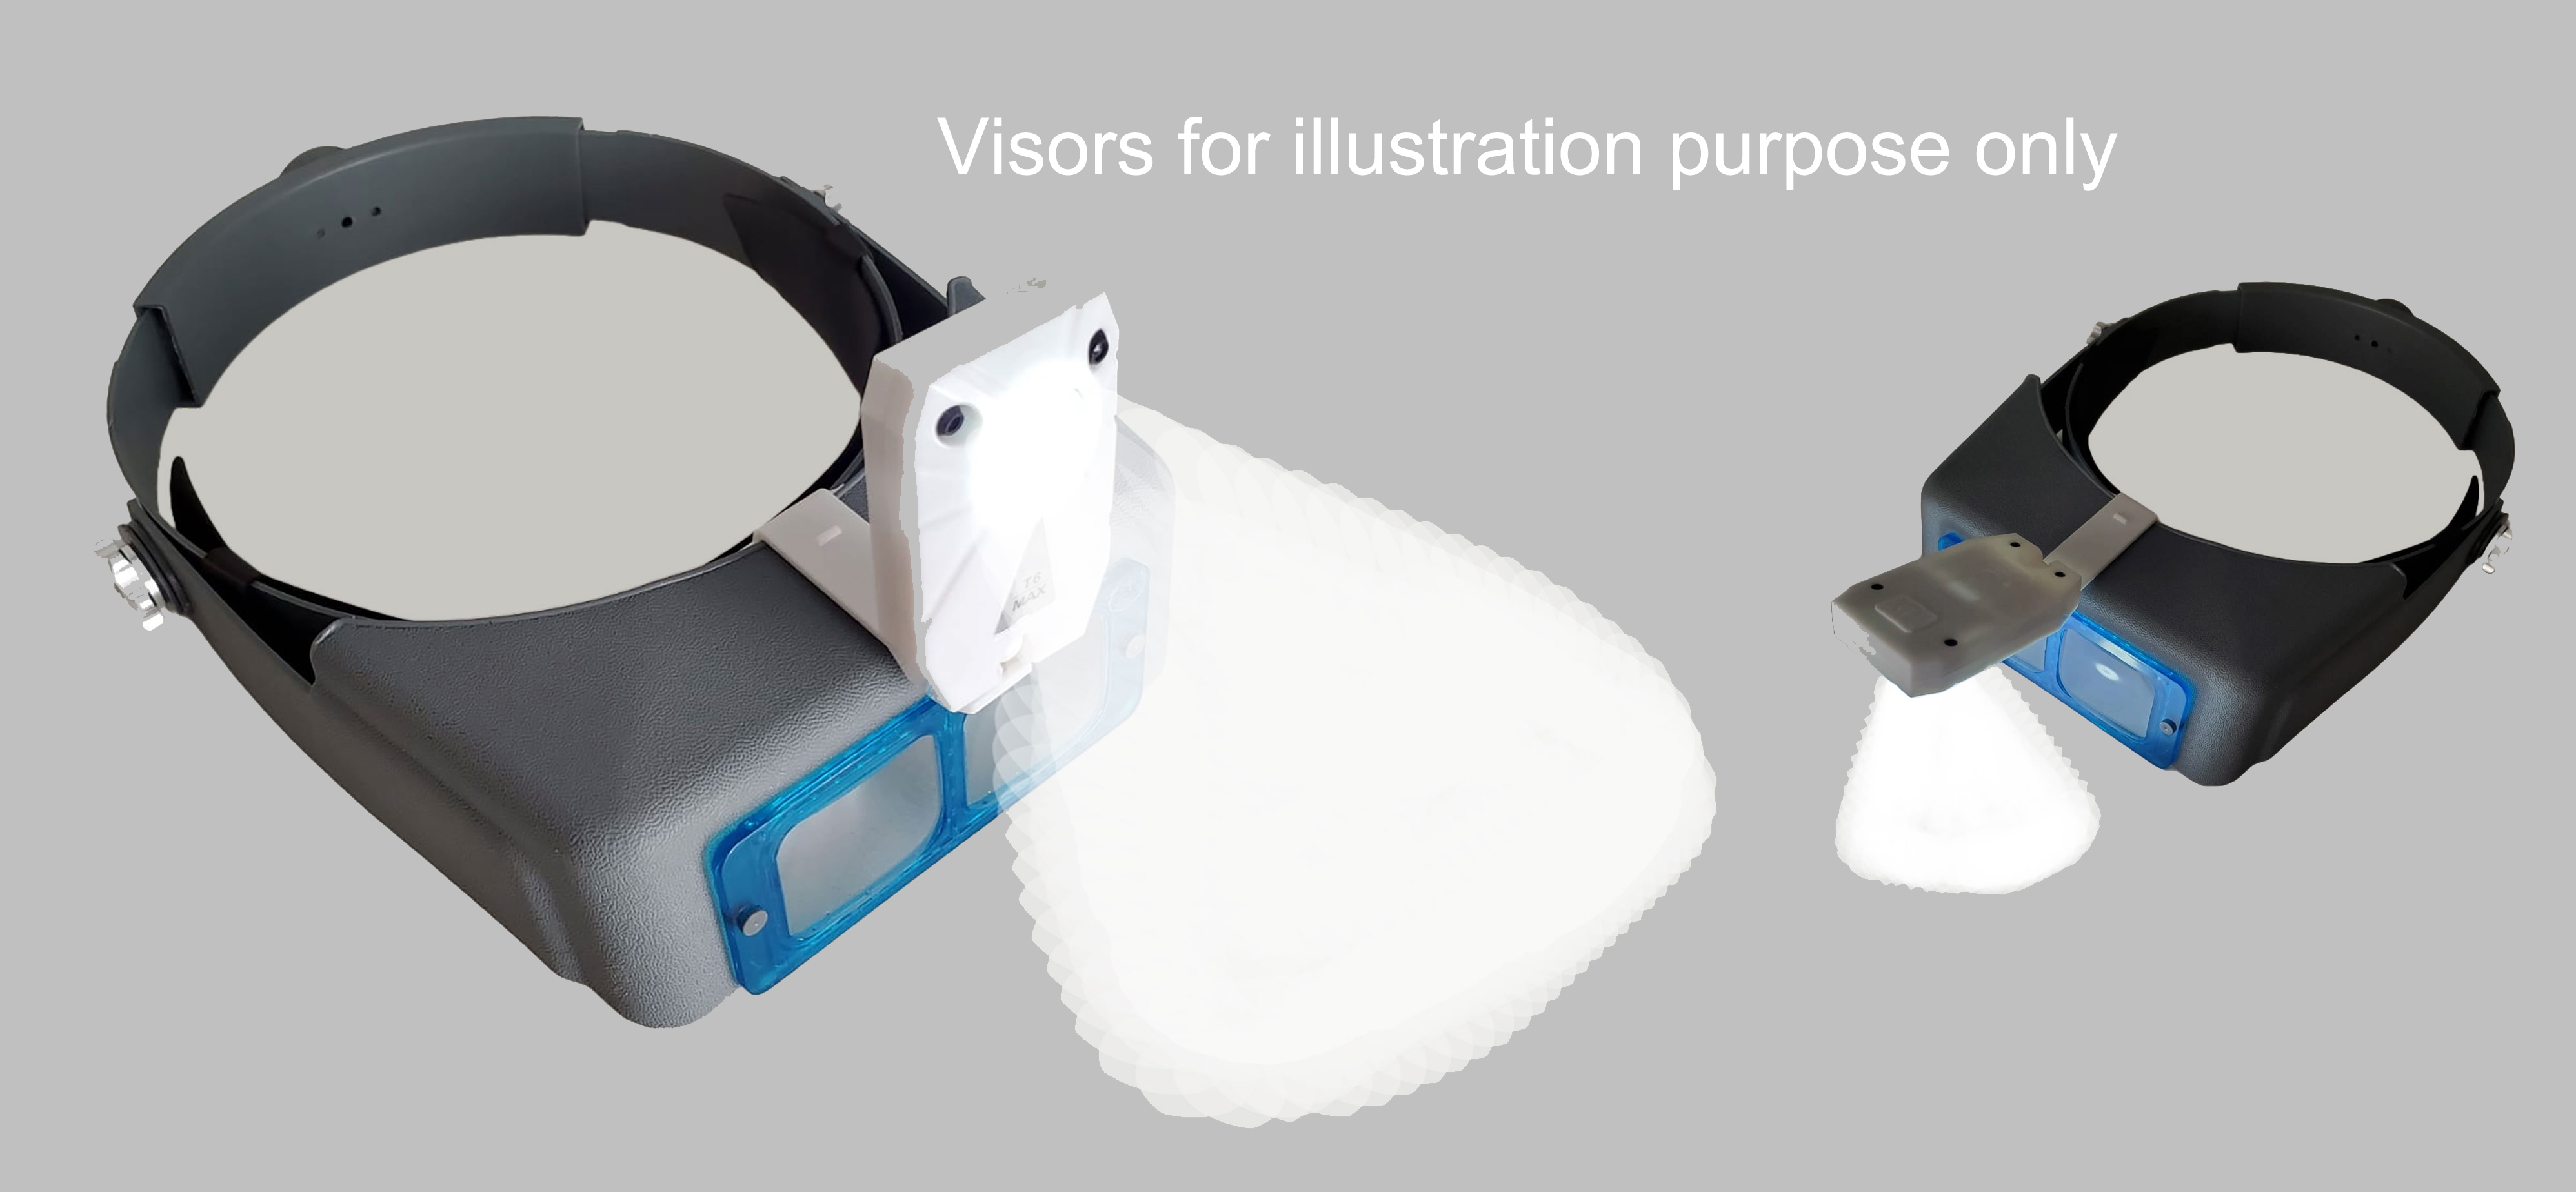 SMART LAMP for MAGNIFYING VISORS